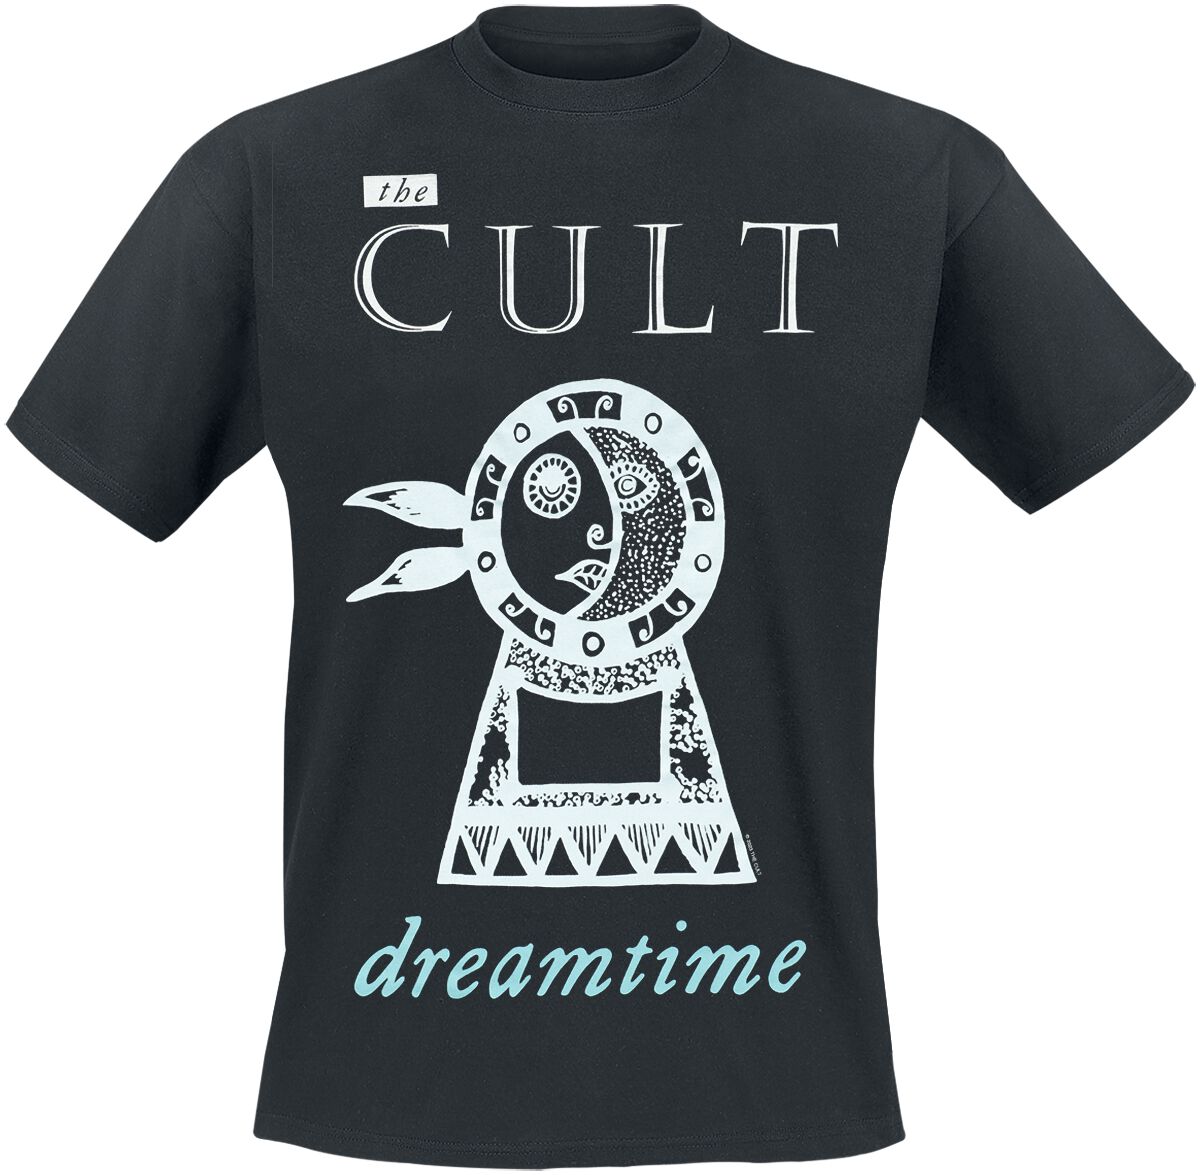 The Cult T-Shirt - Dreamtime - S bis 4XL - für Männer - Größe 3XL - schwarz  - Lizenziertes Merchandise!